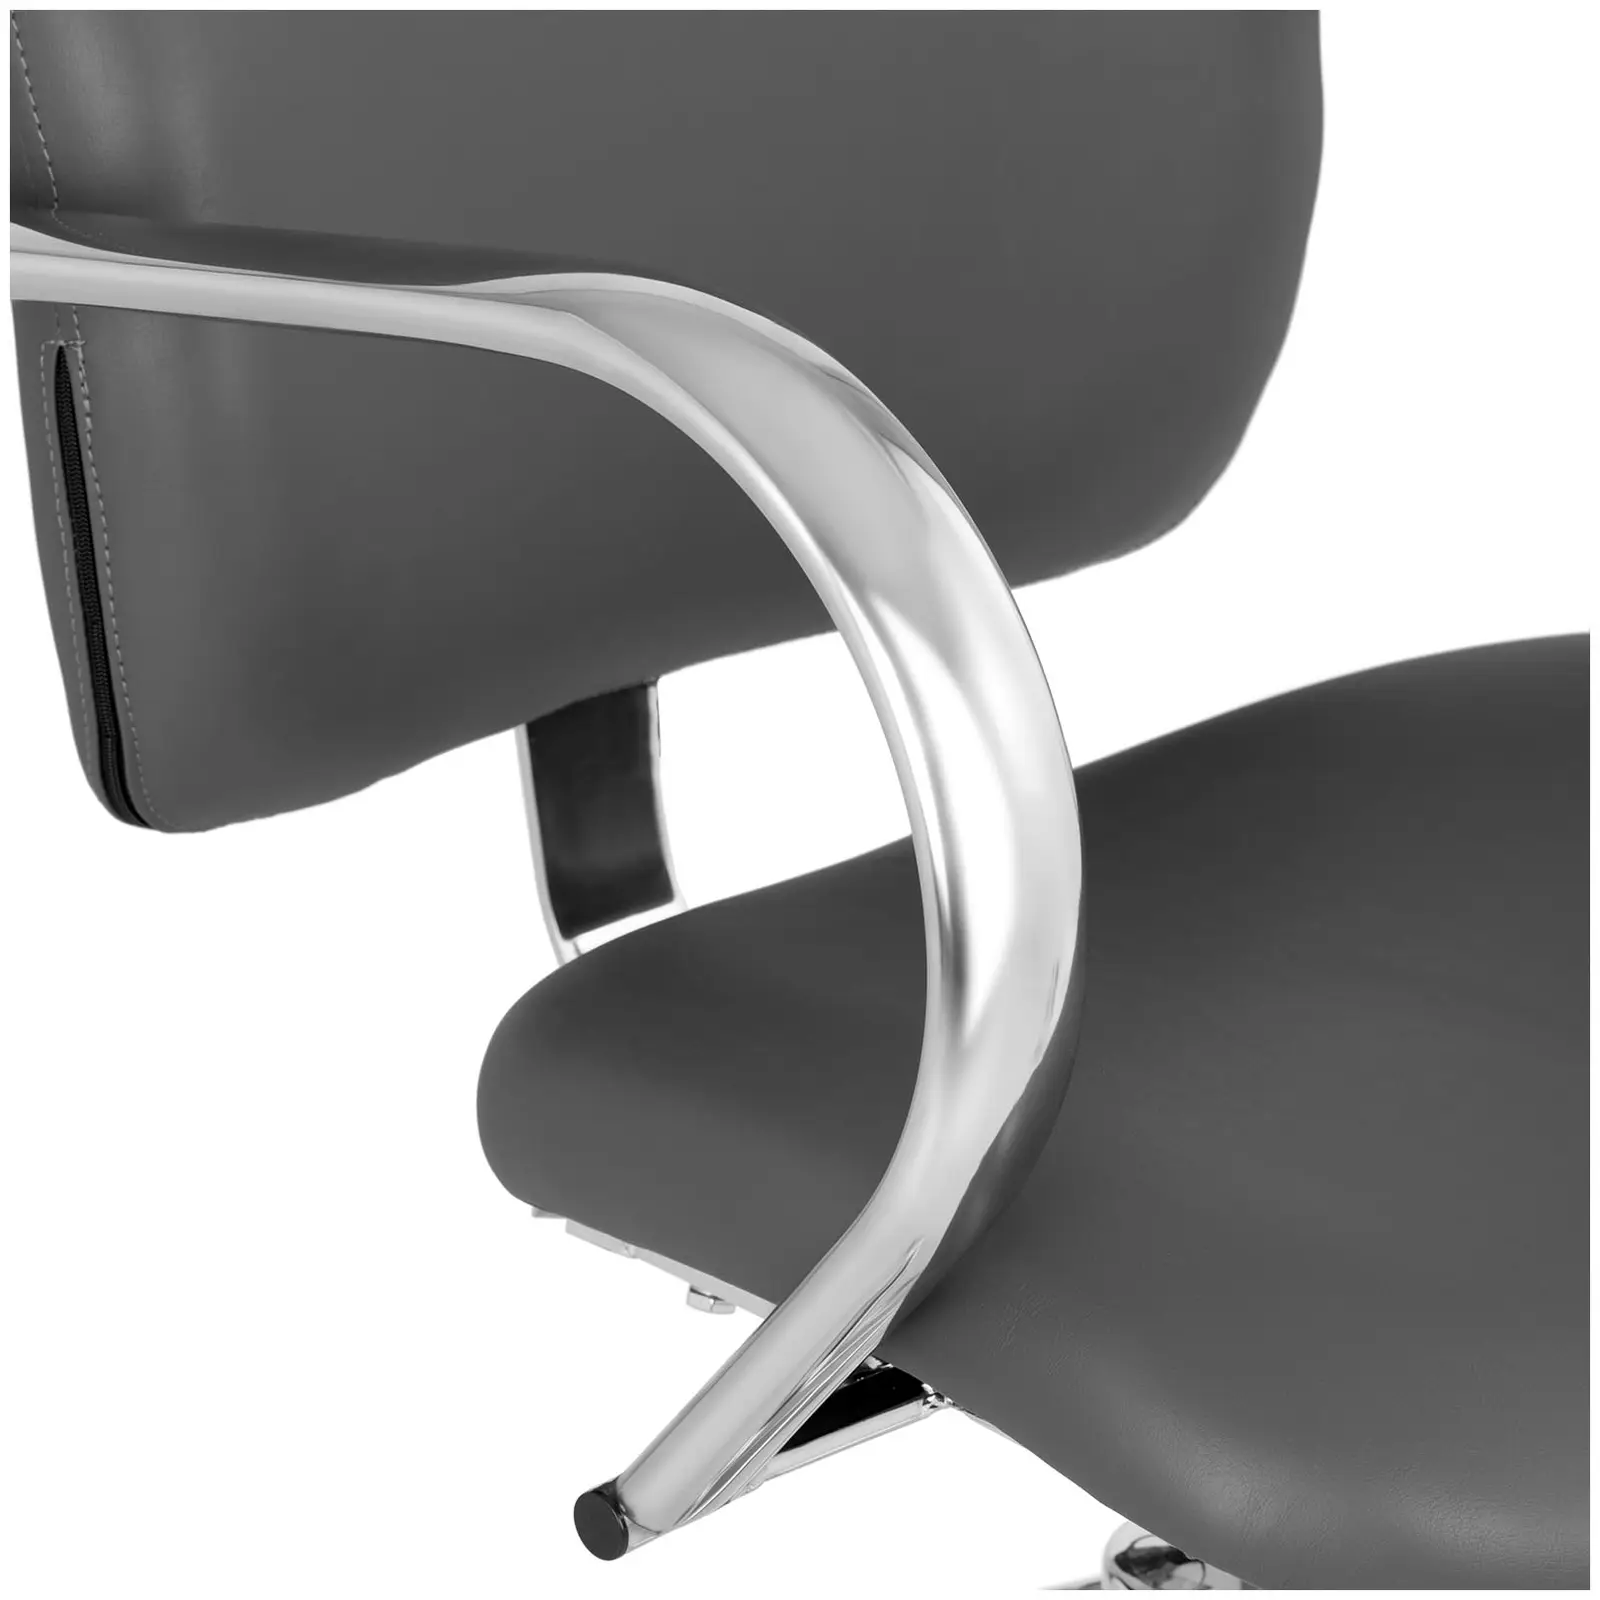 Occasion fauteuil coiffure - 590 - 720 mm - 150 kg - Gris